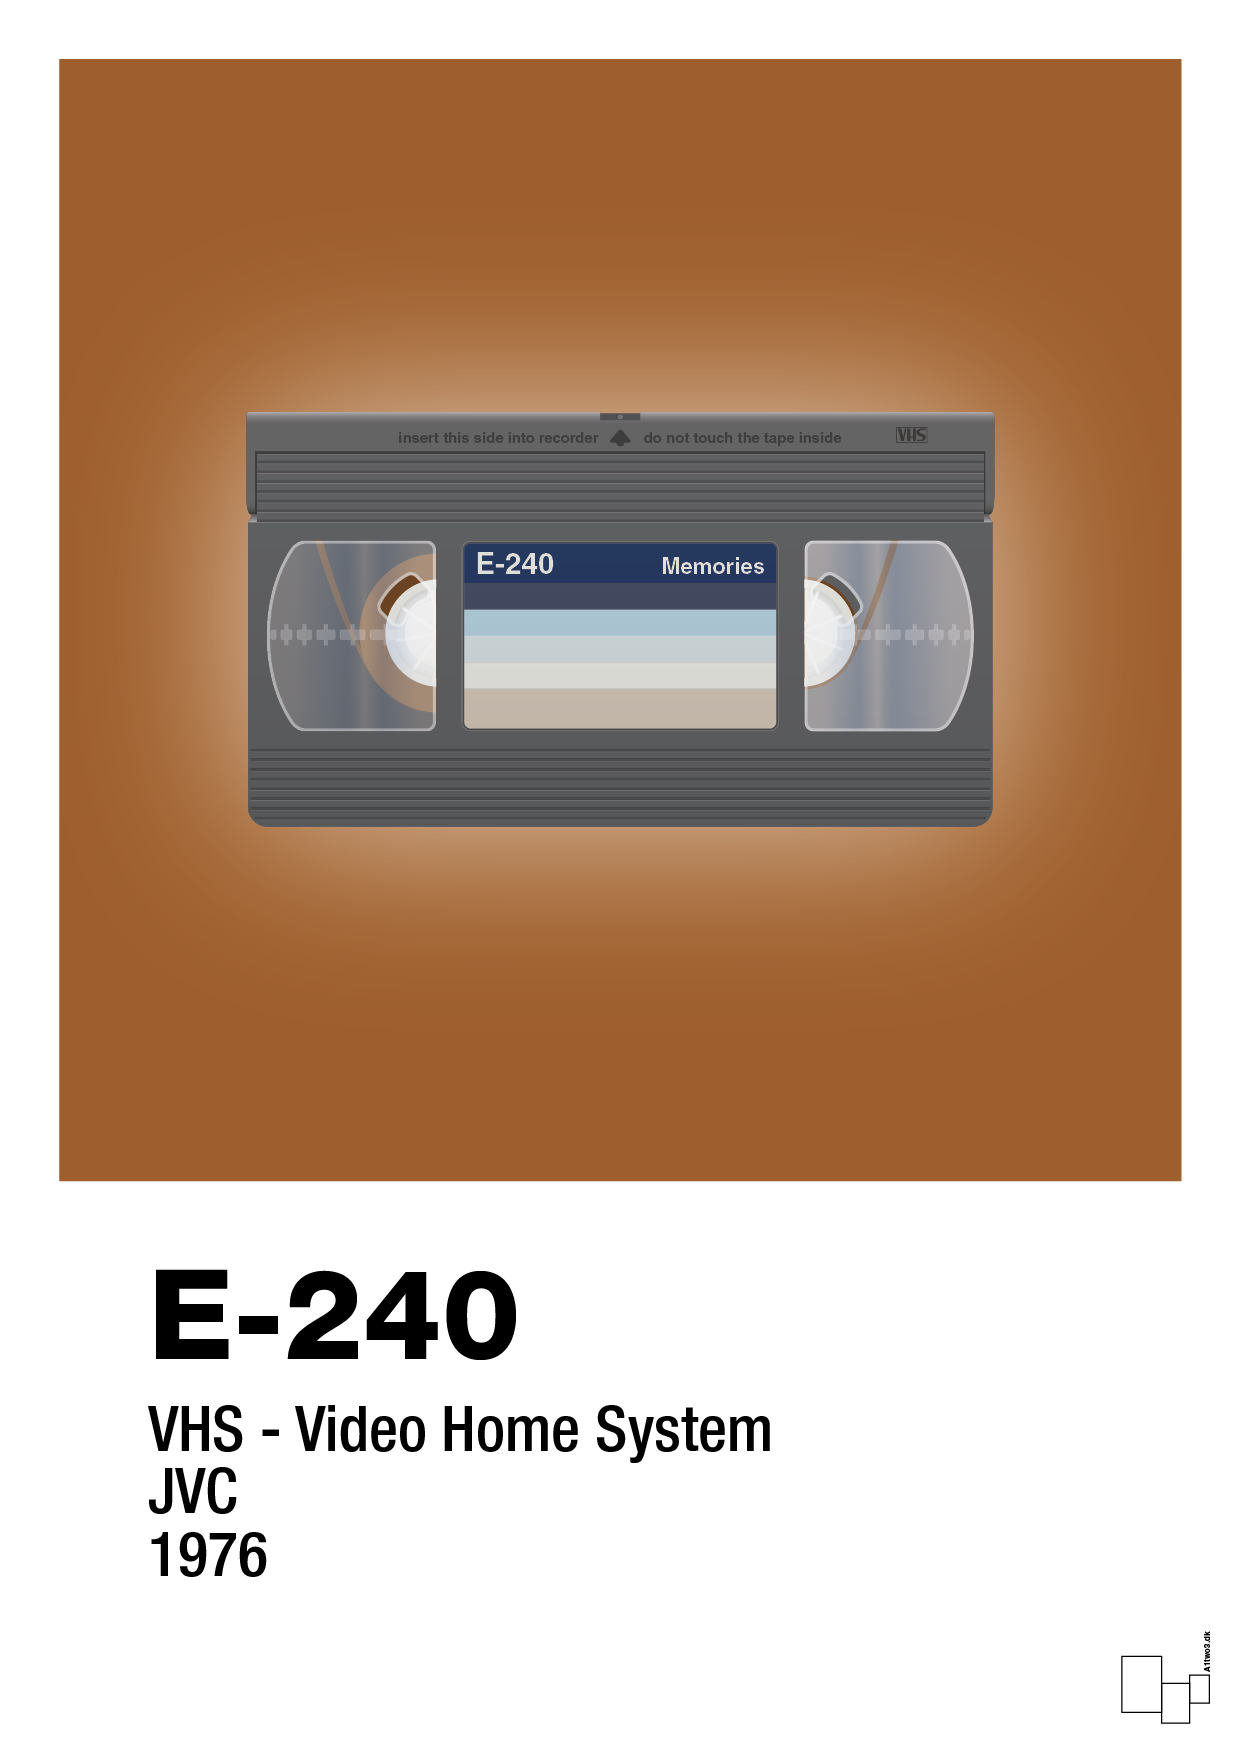 videobånd e-240 - Plakat med Grafik i Cognac